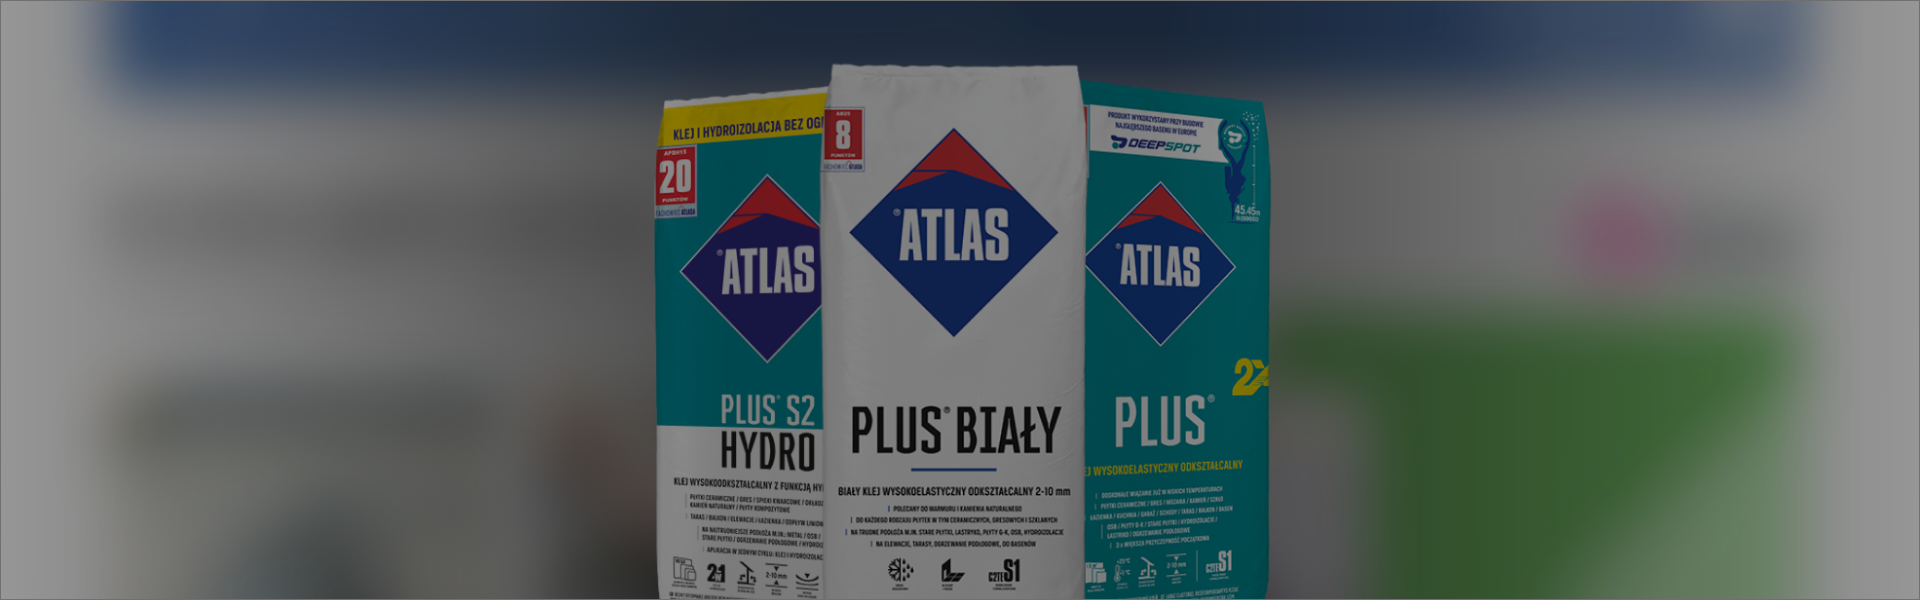 Atlas Banner